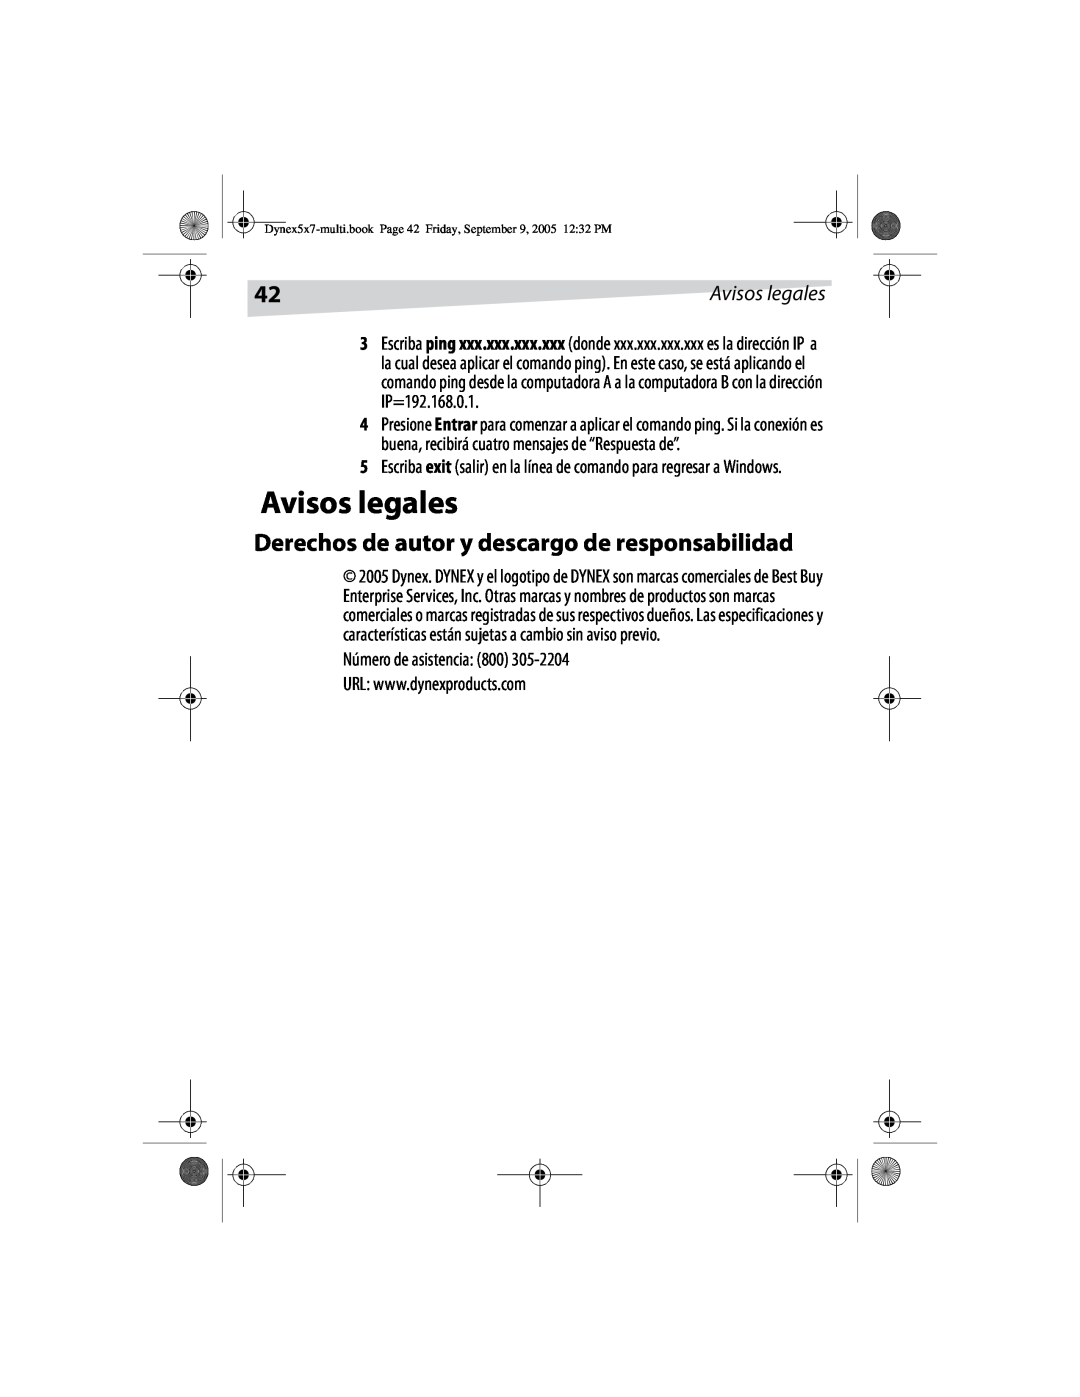 Dynex DX-E101 manual Avisos legales, Derechos de autor y descargo de responsabilidad, Número de asistencia 800 